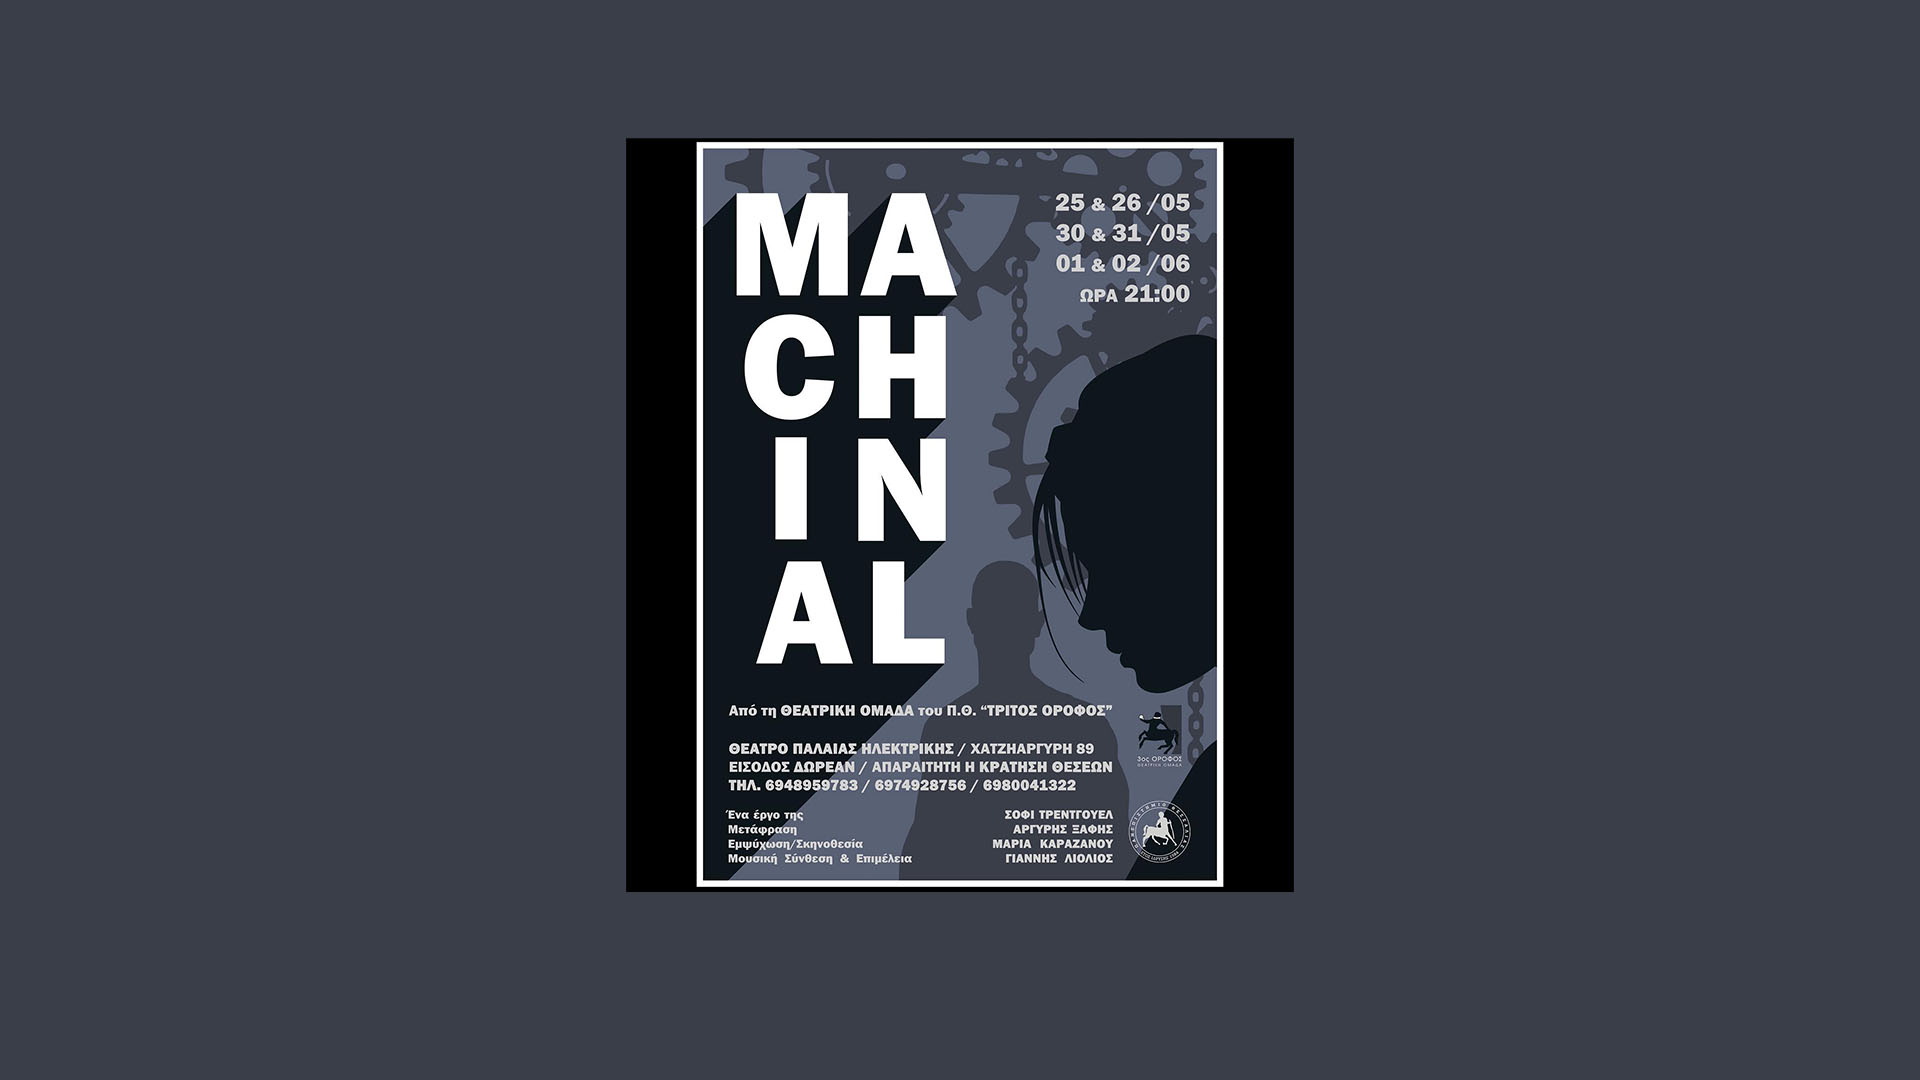 Θεατρική Παράσταση "Machinal" - "3ος Όροφος"